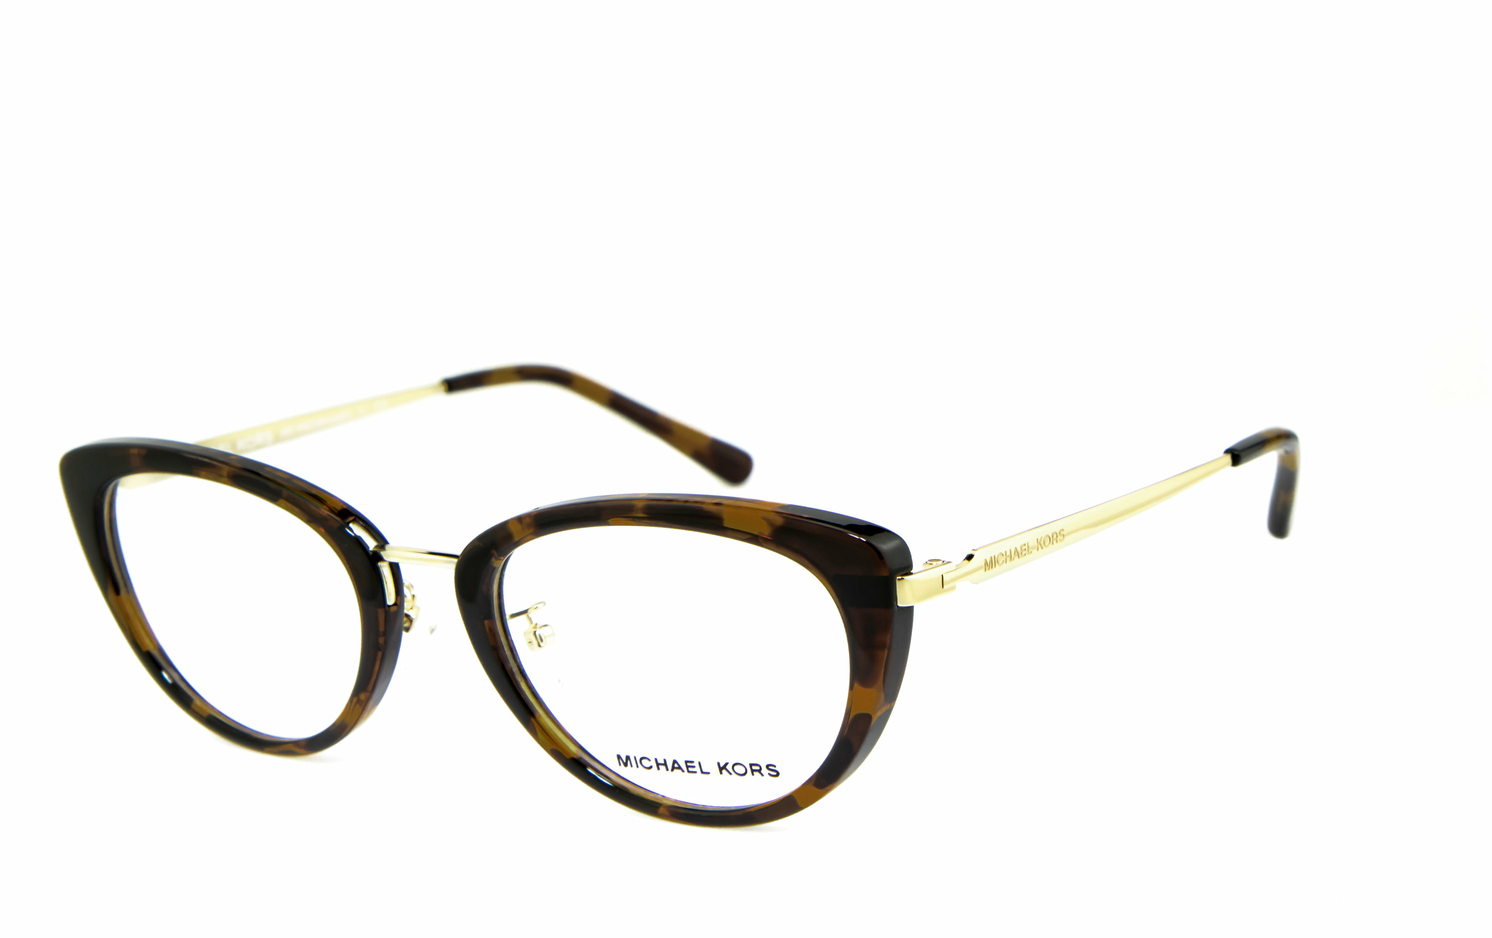 MICHAEL KORS | MK4063  Brille, Brillengestell, Brillenfassung, Korrekturbrille, Korrekturfassung